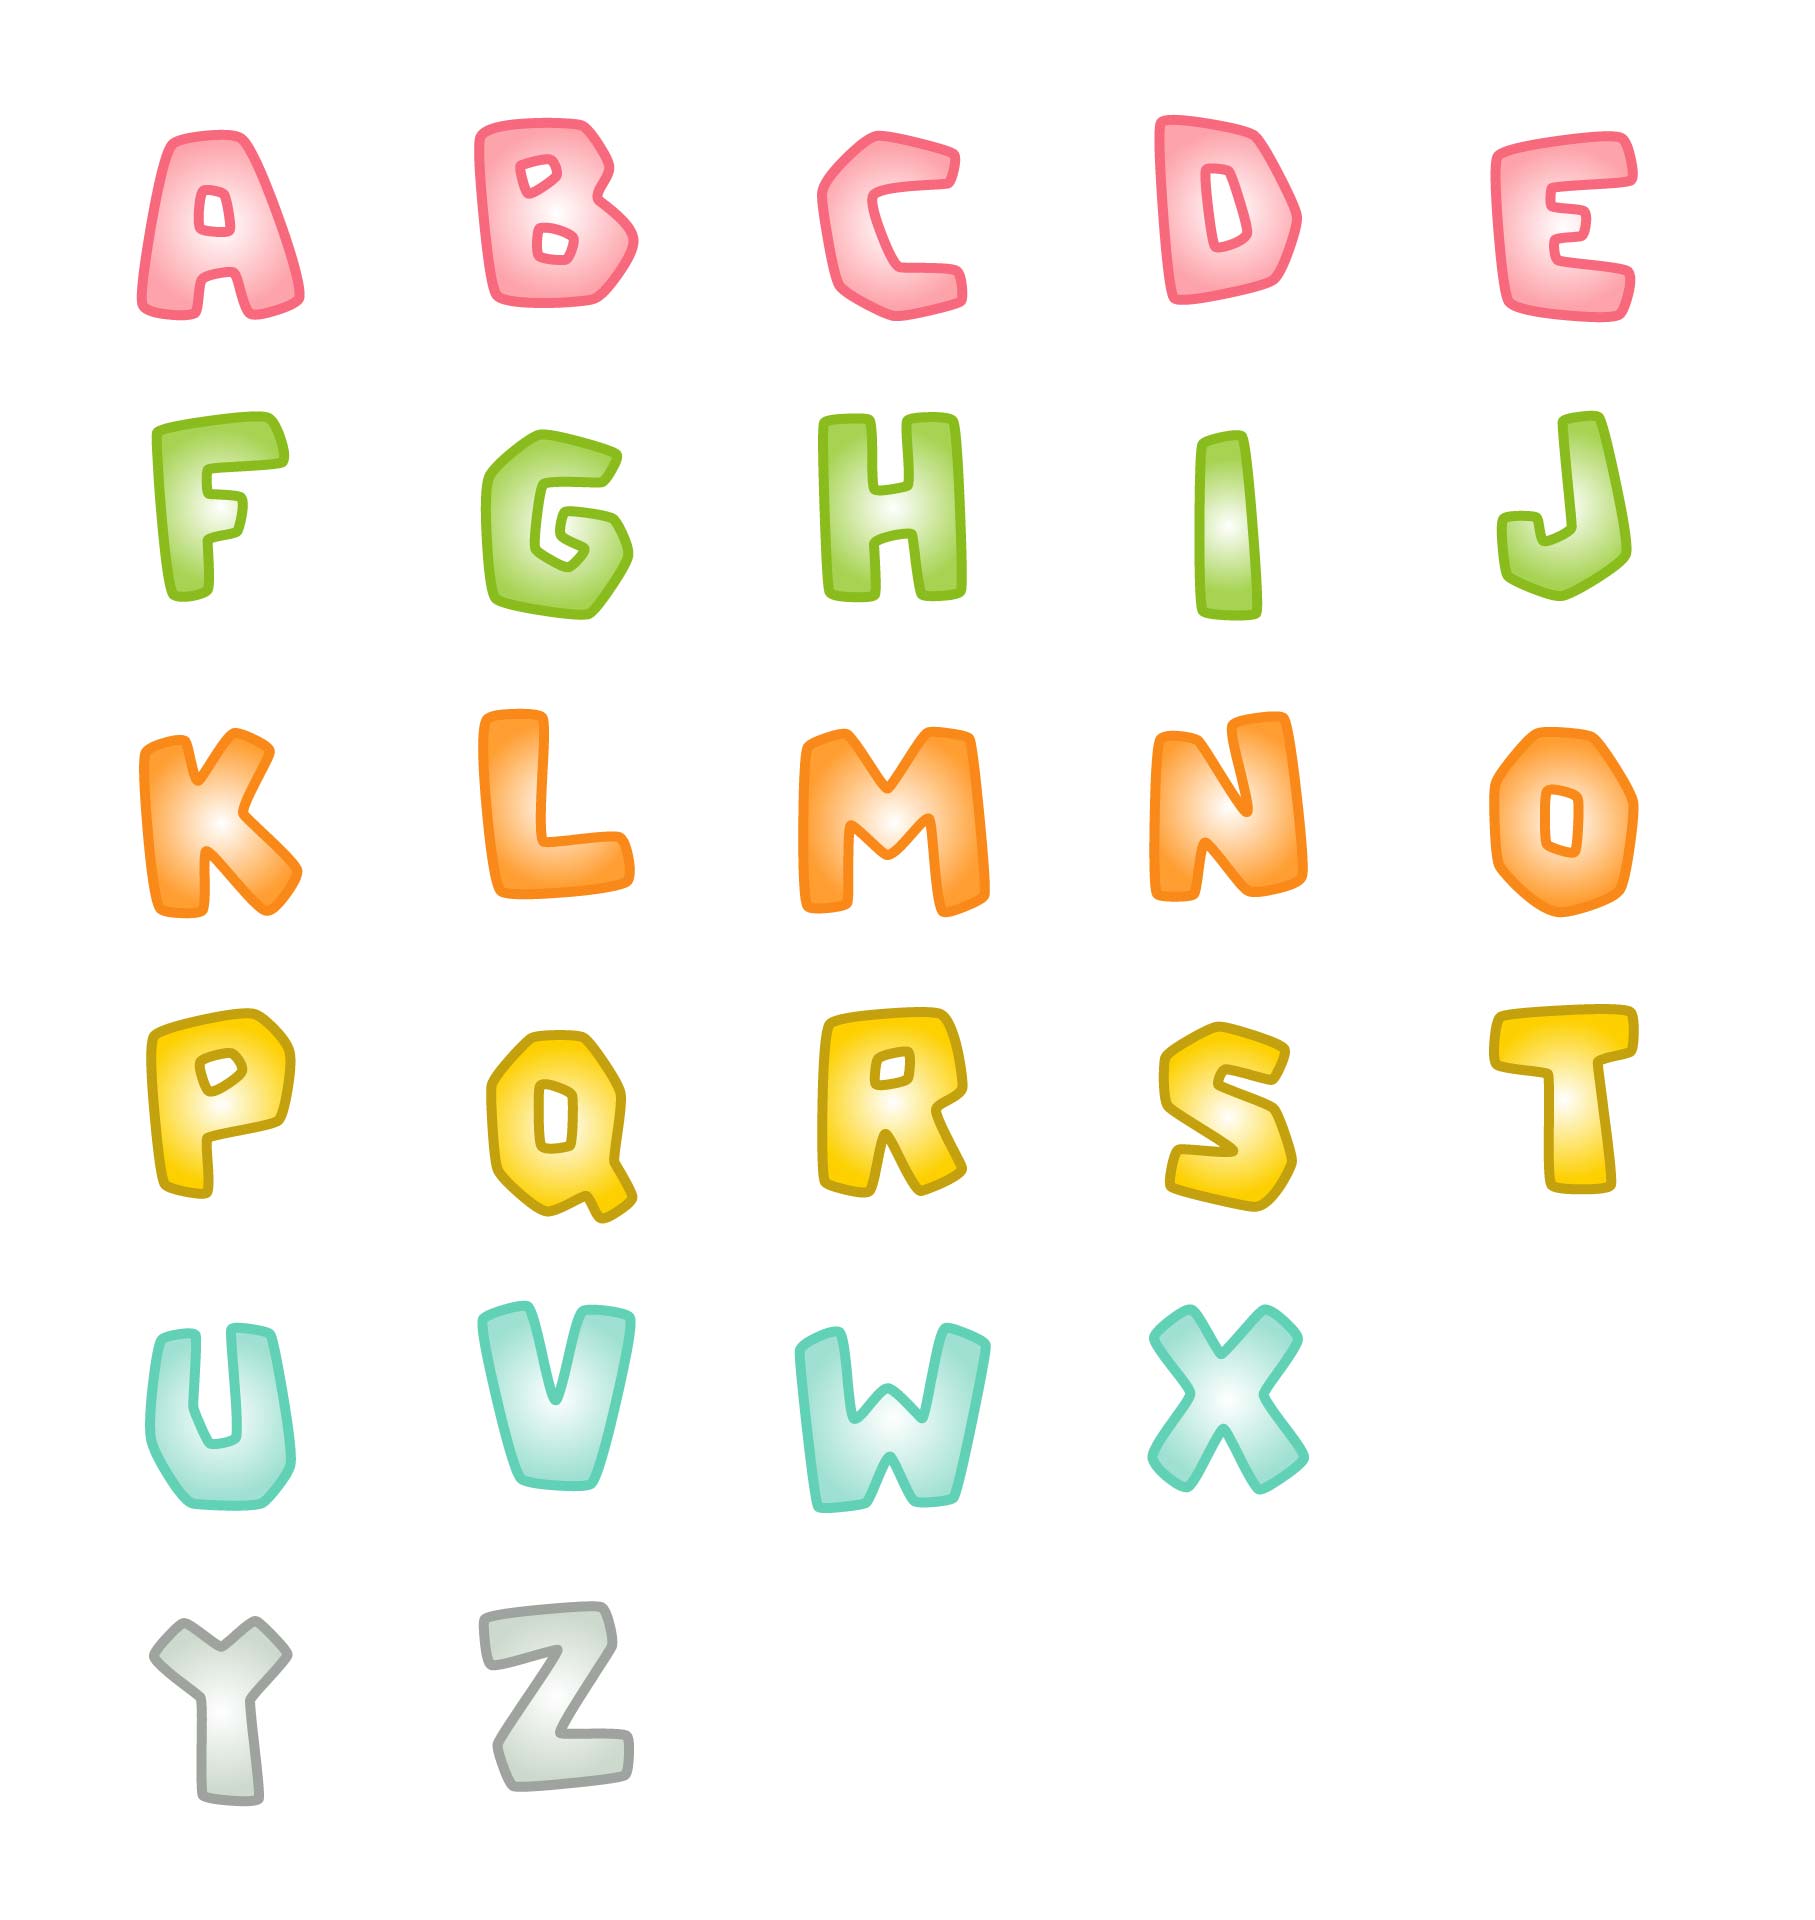 Printable Digital Alphabet Letters Bubble Letters Puff